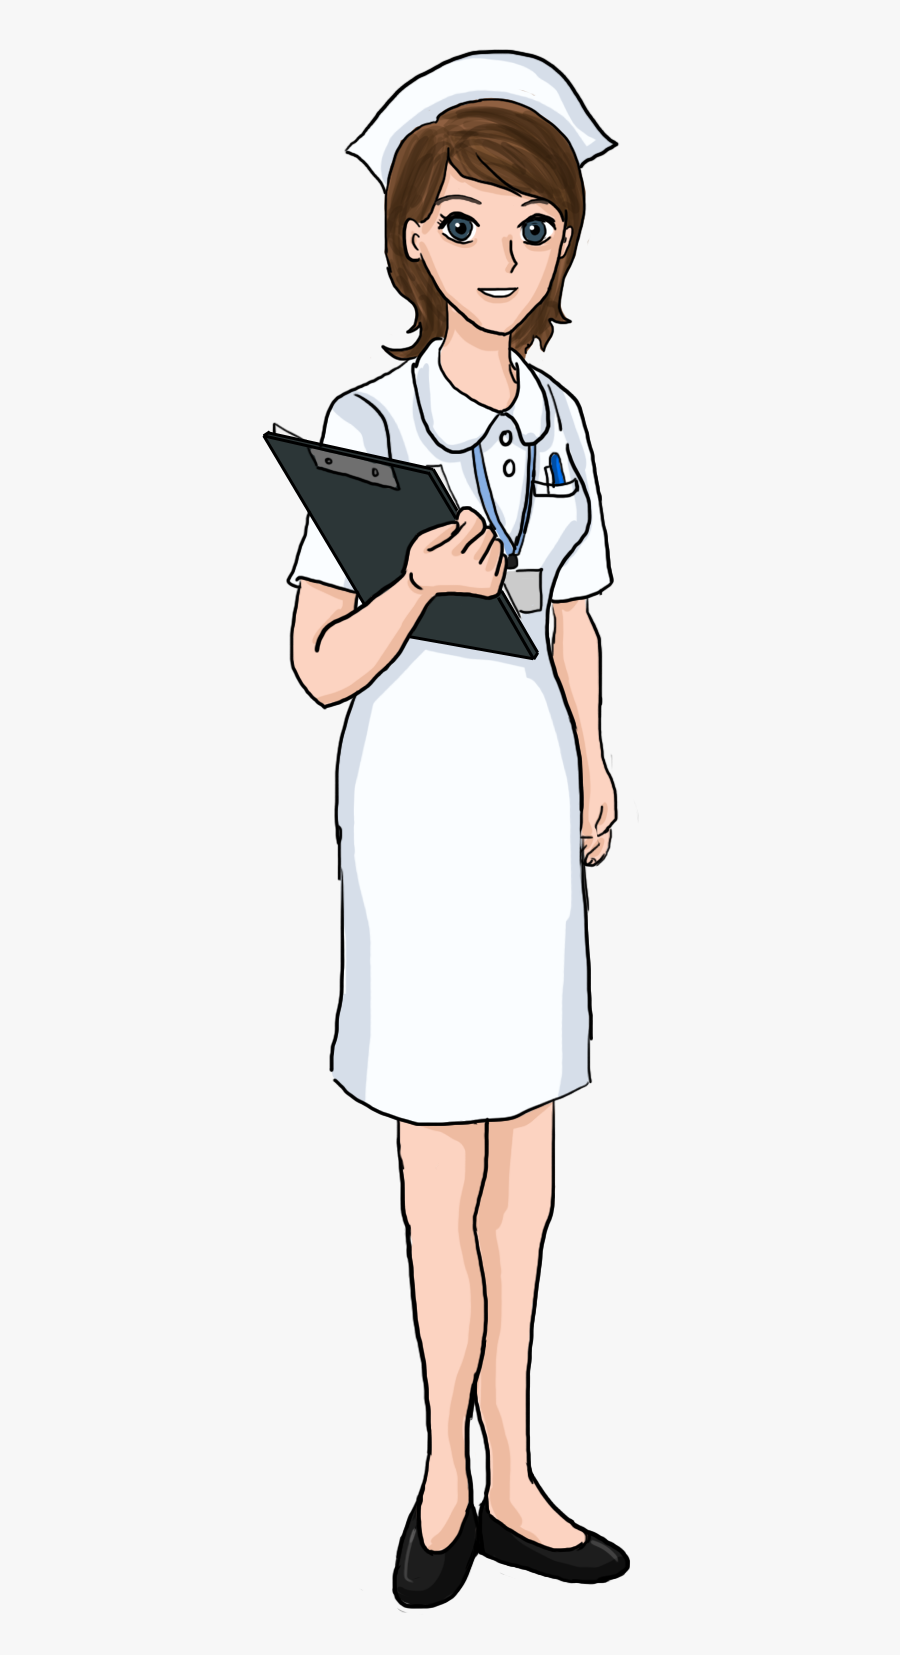 Cartoon Pictures Of Nurses Clipart Image - Nurse Clipart, Transparent Clipart